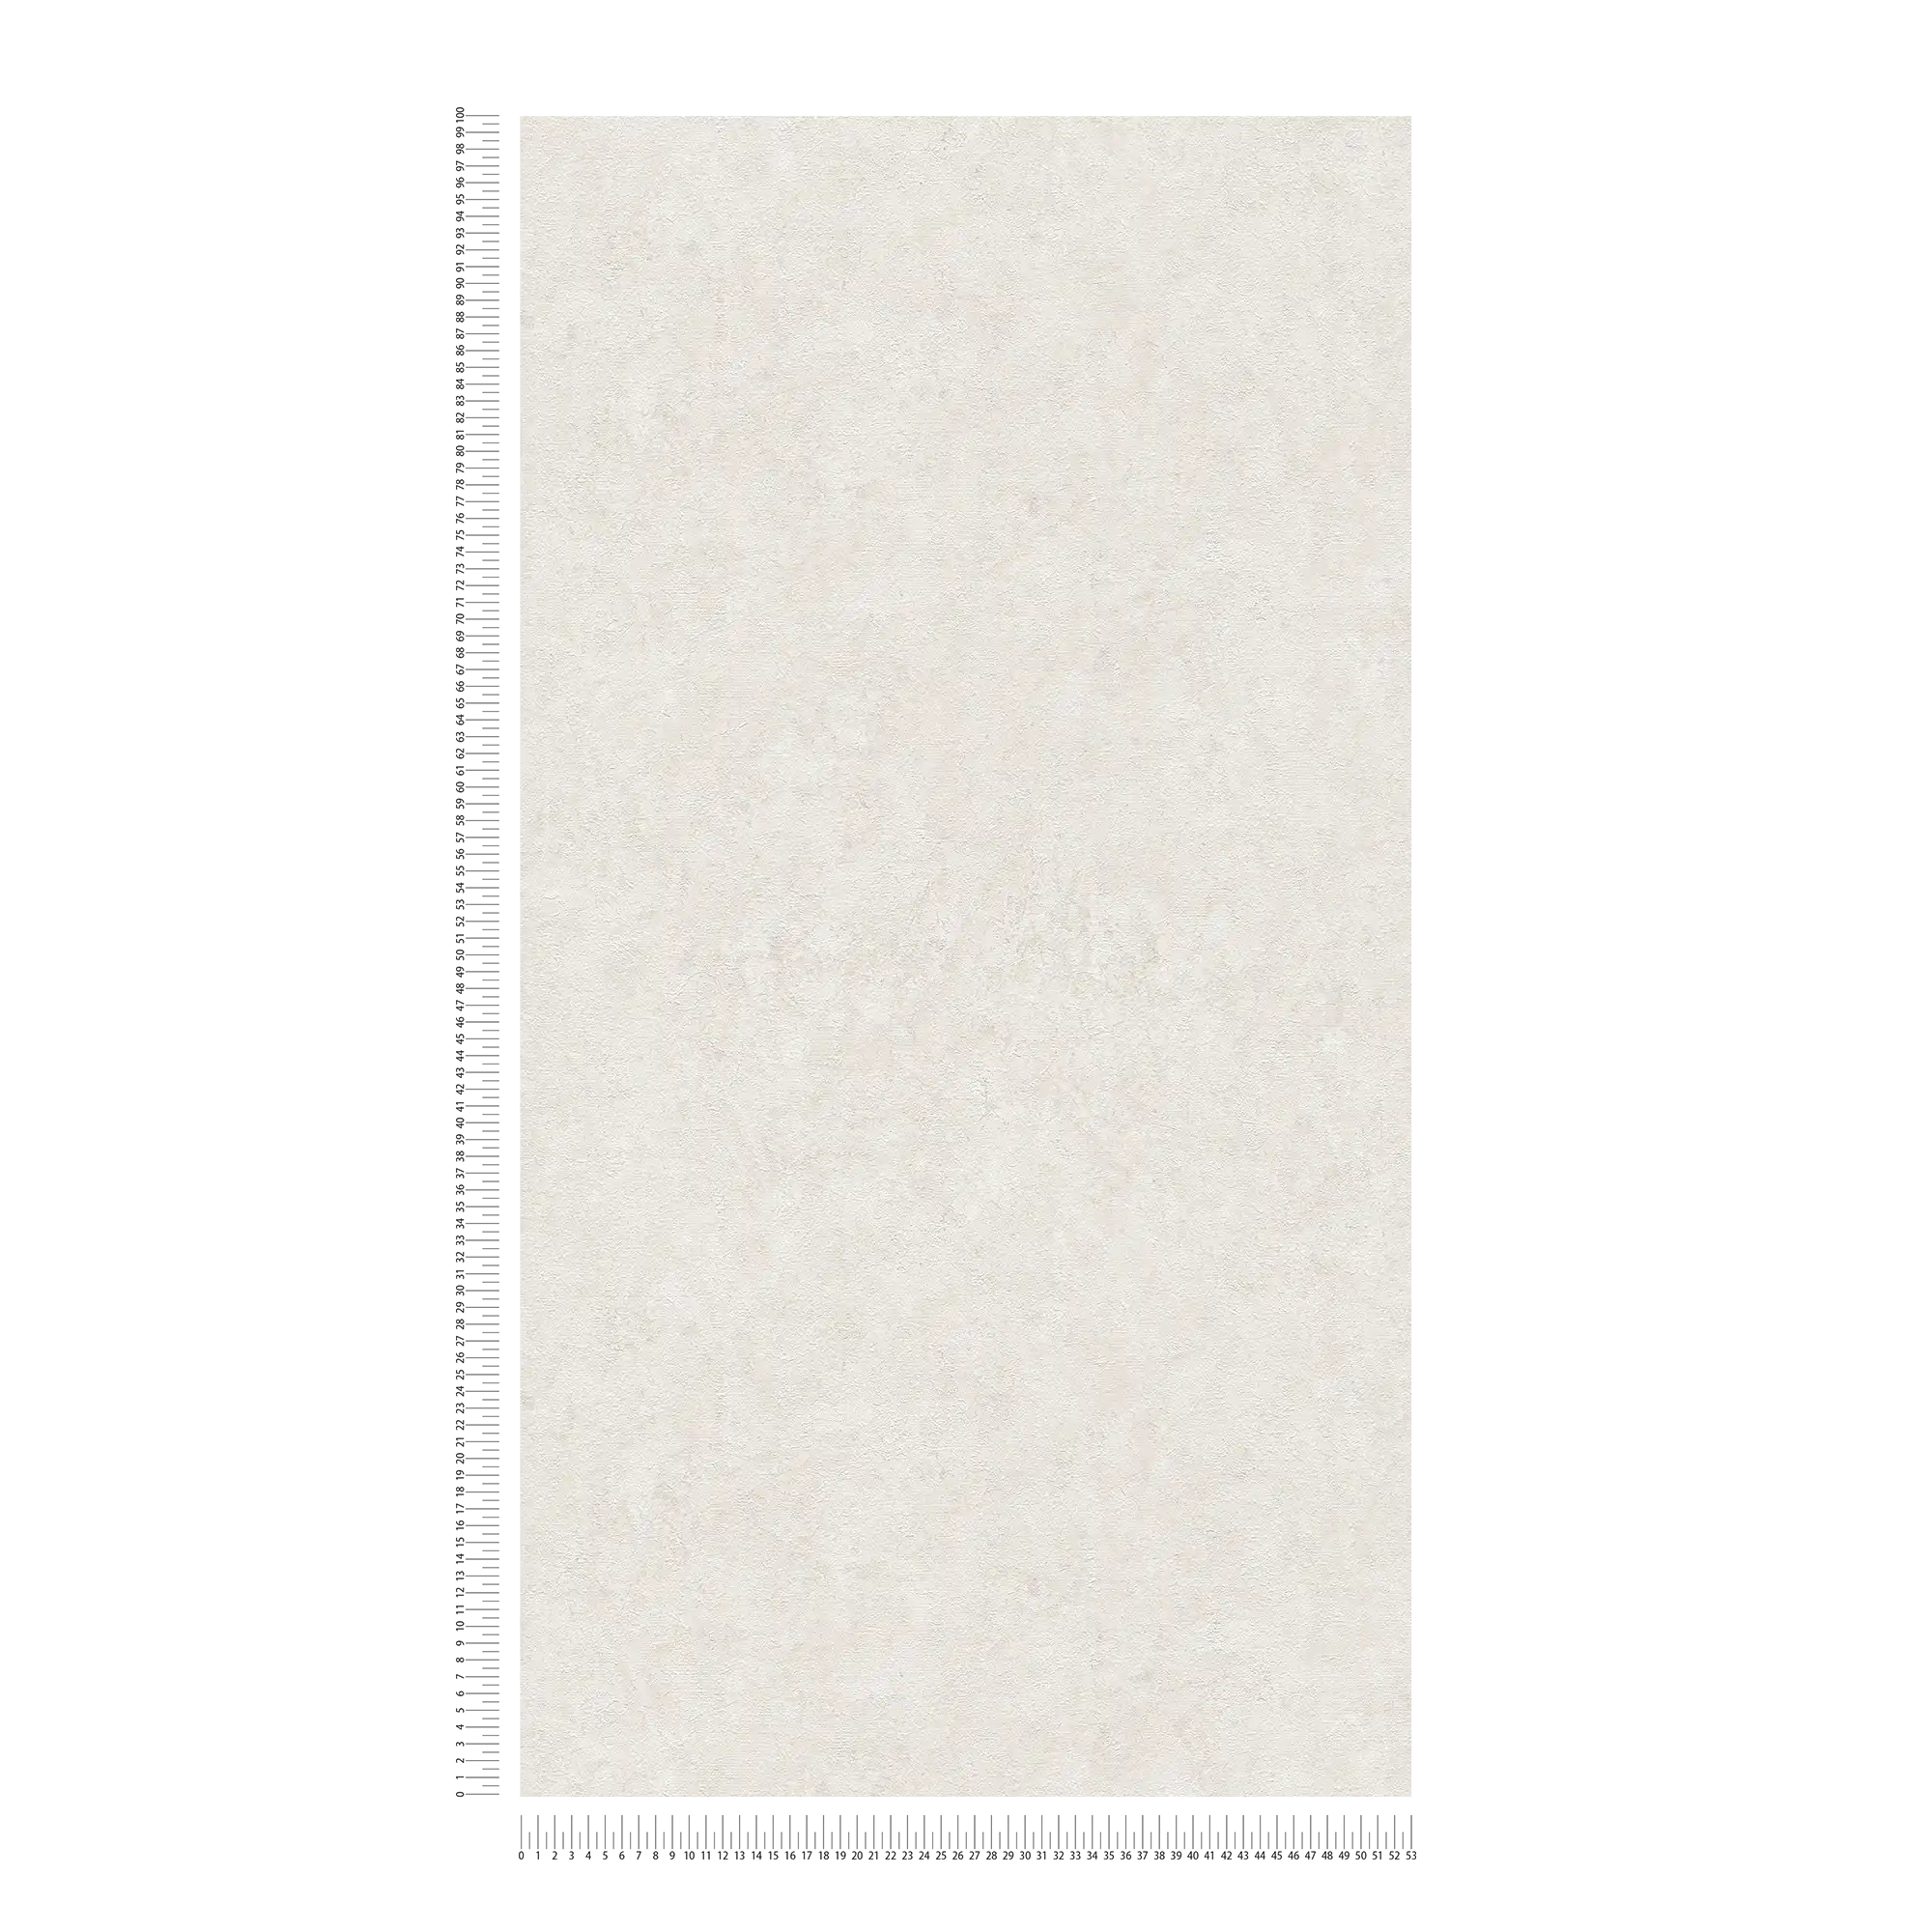             Vliestapete einfarbig mit Strukturmuster – Weiß, Hellgrau
        